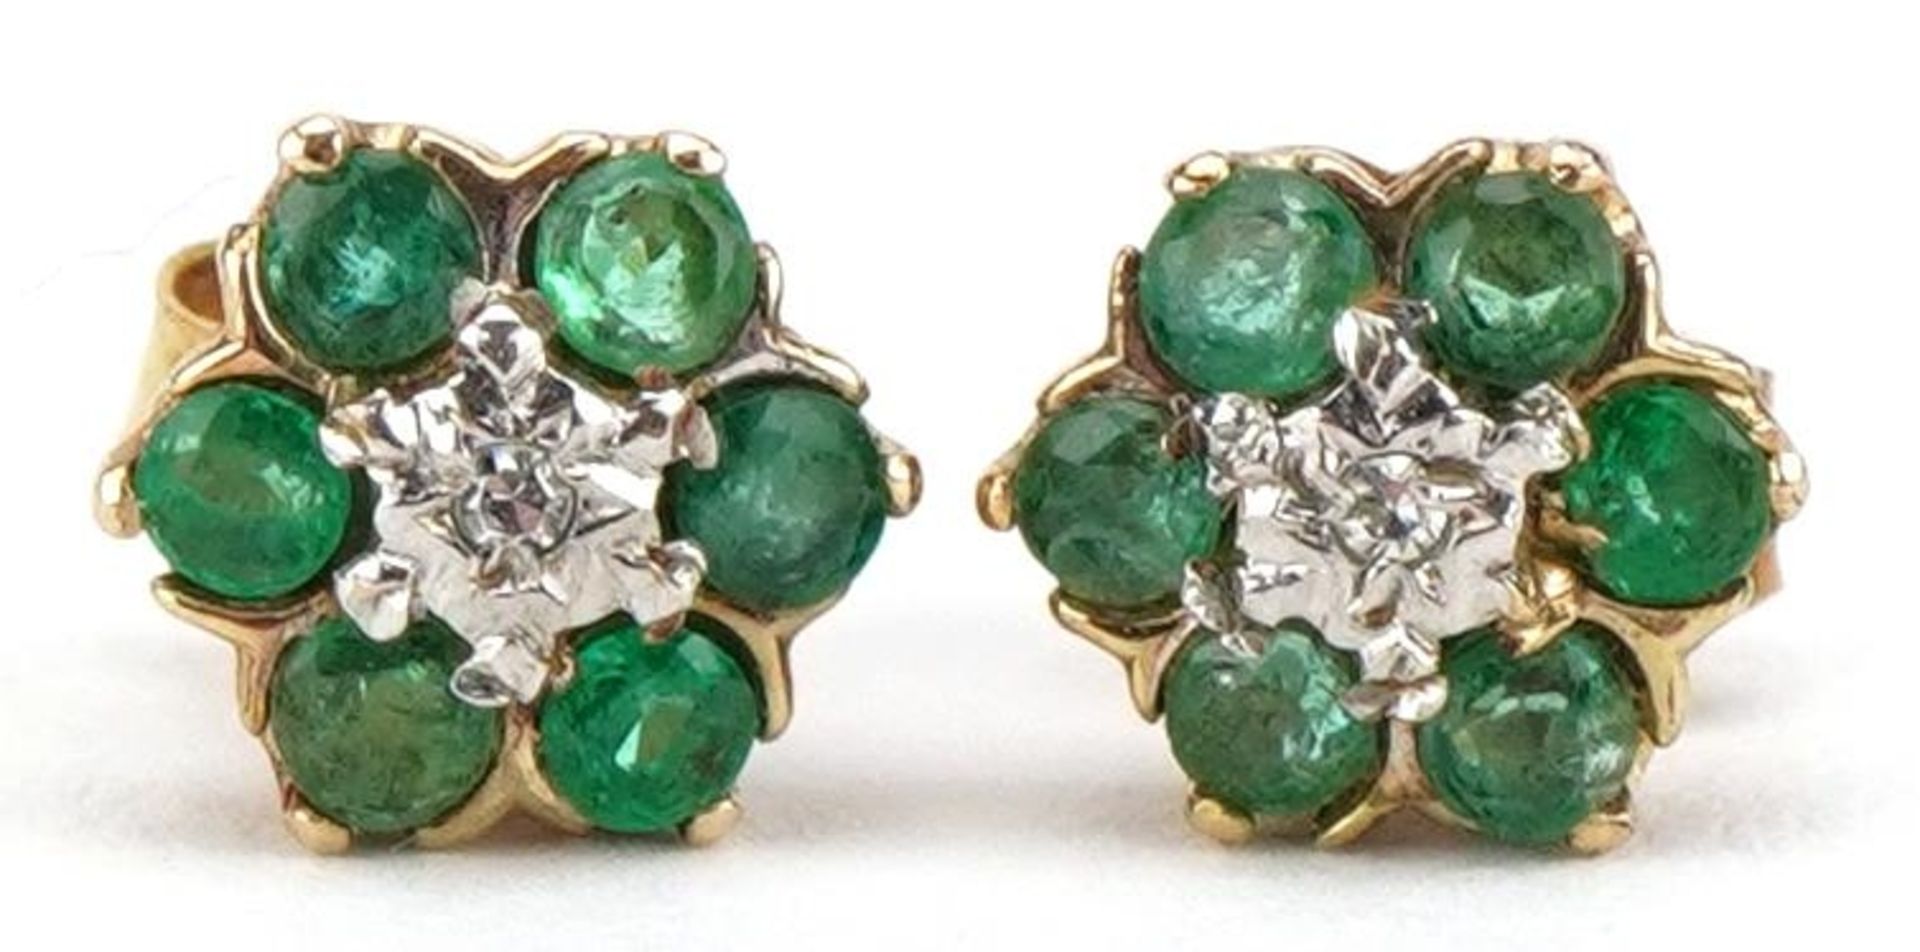 Pair of emerald and diamond cluster stud earrings, 8mm in diameter, 1.0g